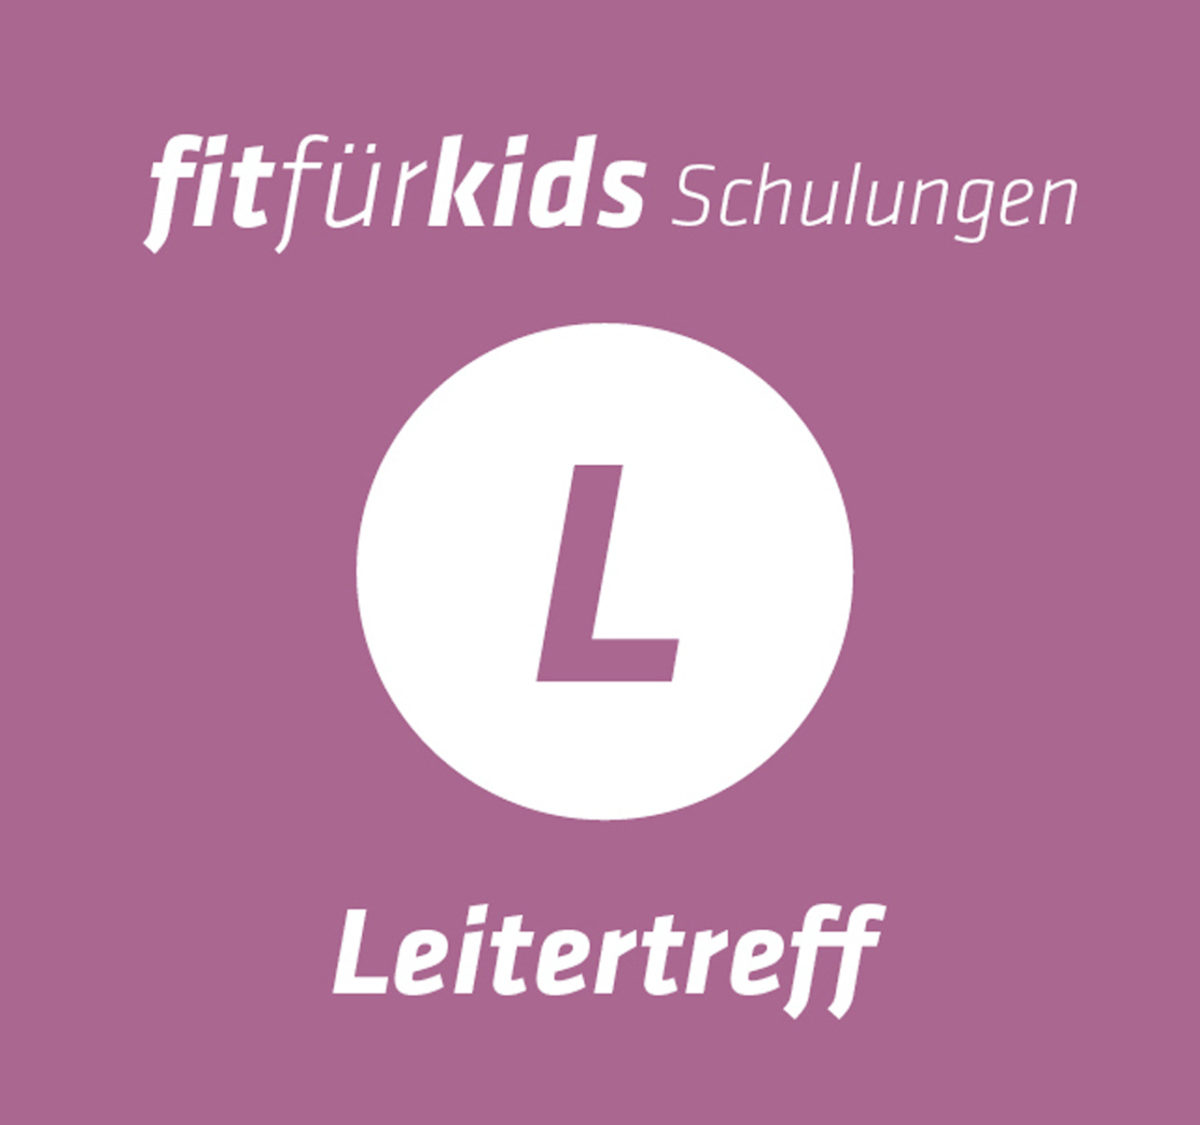 ffk_leitertreff_content_header 2